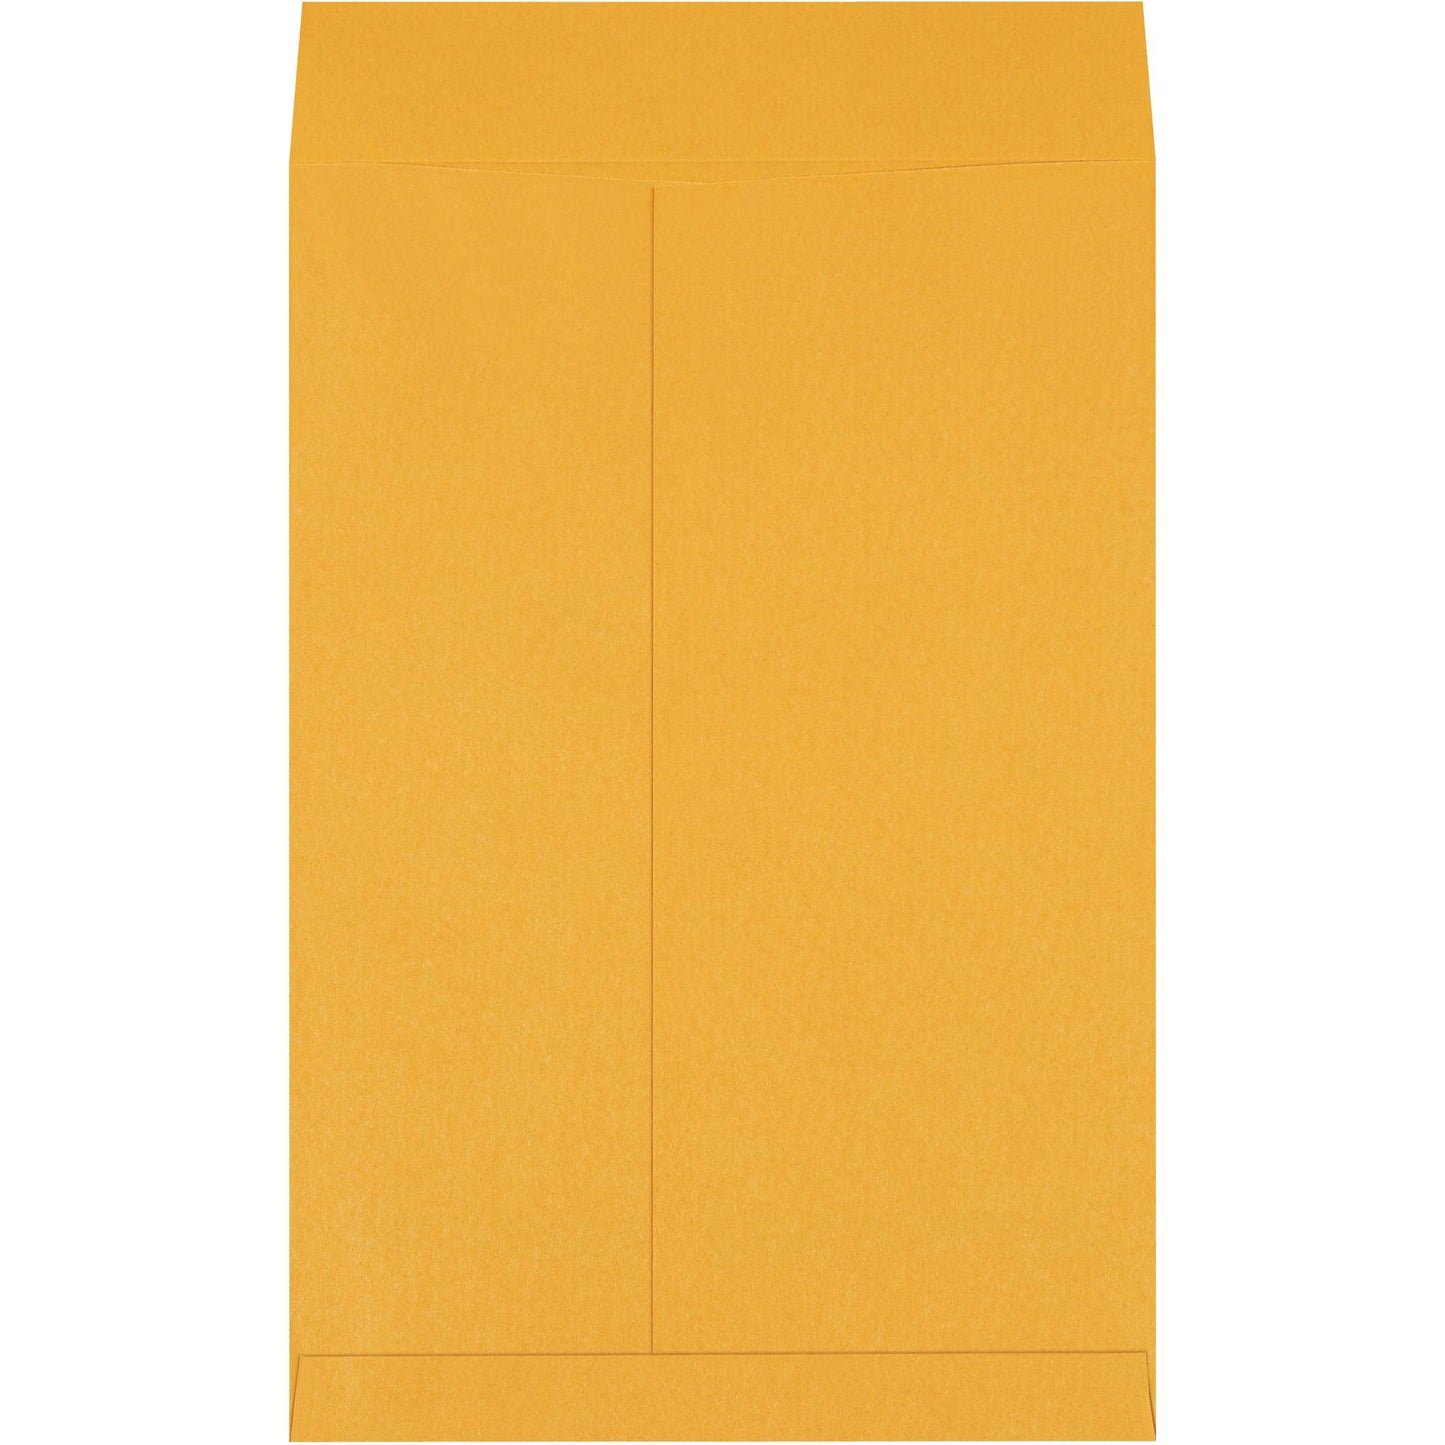 12 1/2 x 18 1/2" Kraft Jumbo Envelopes - EN1080